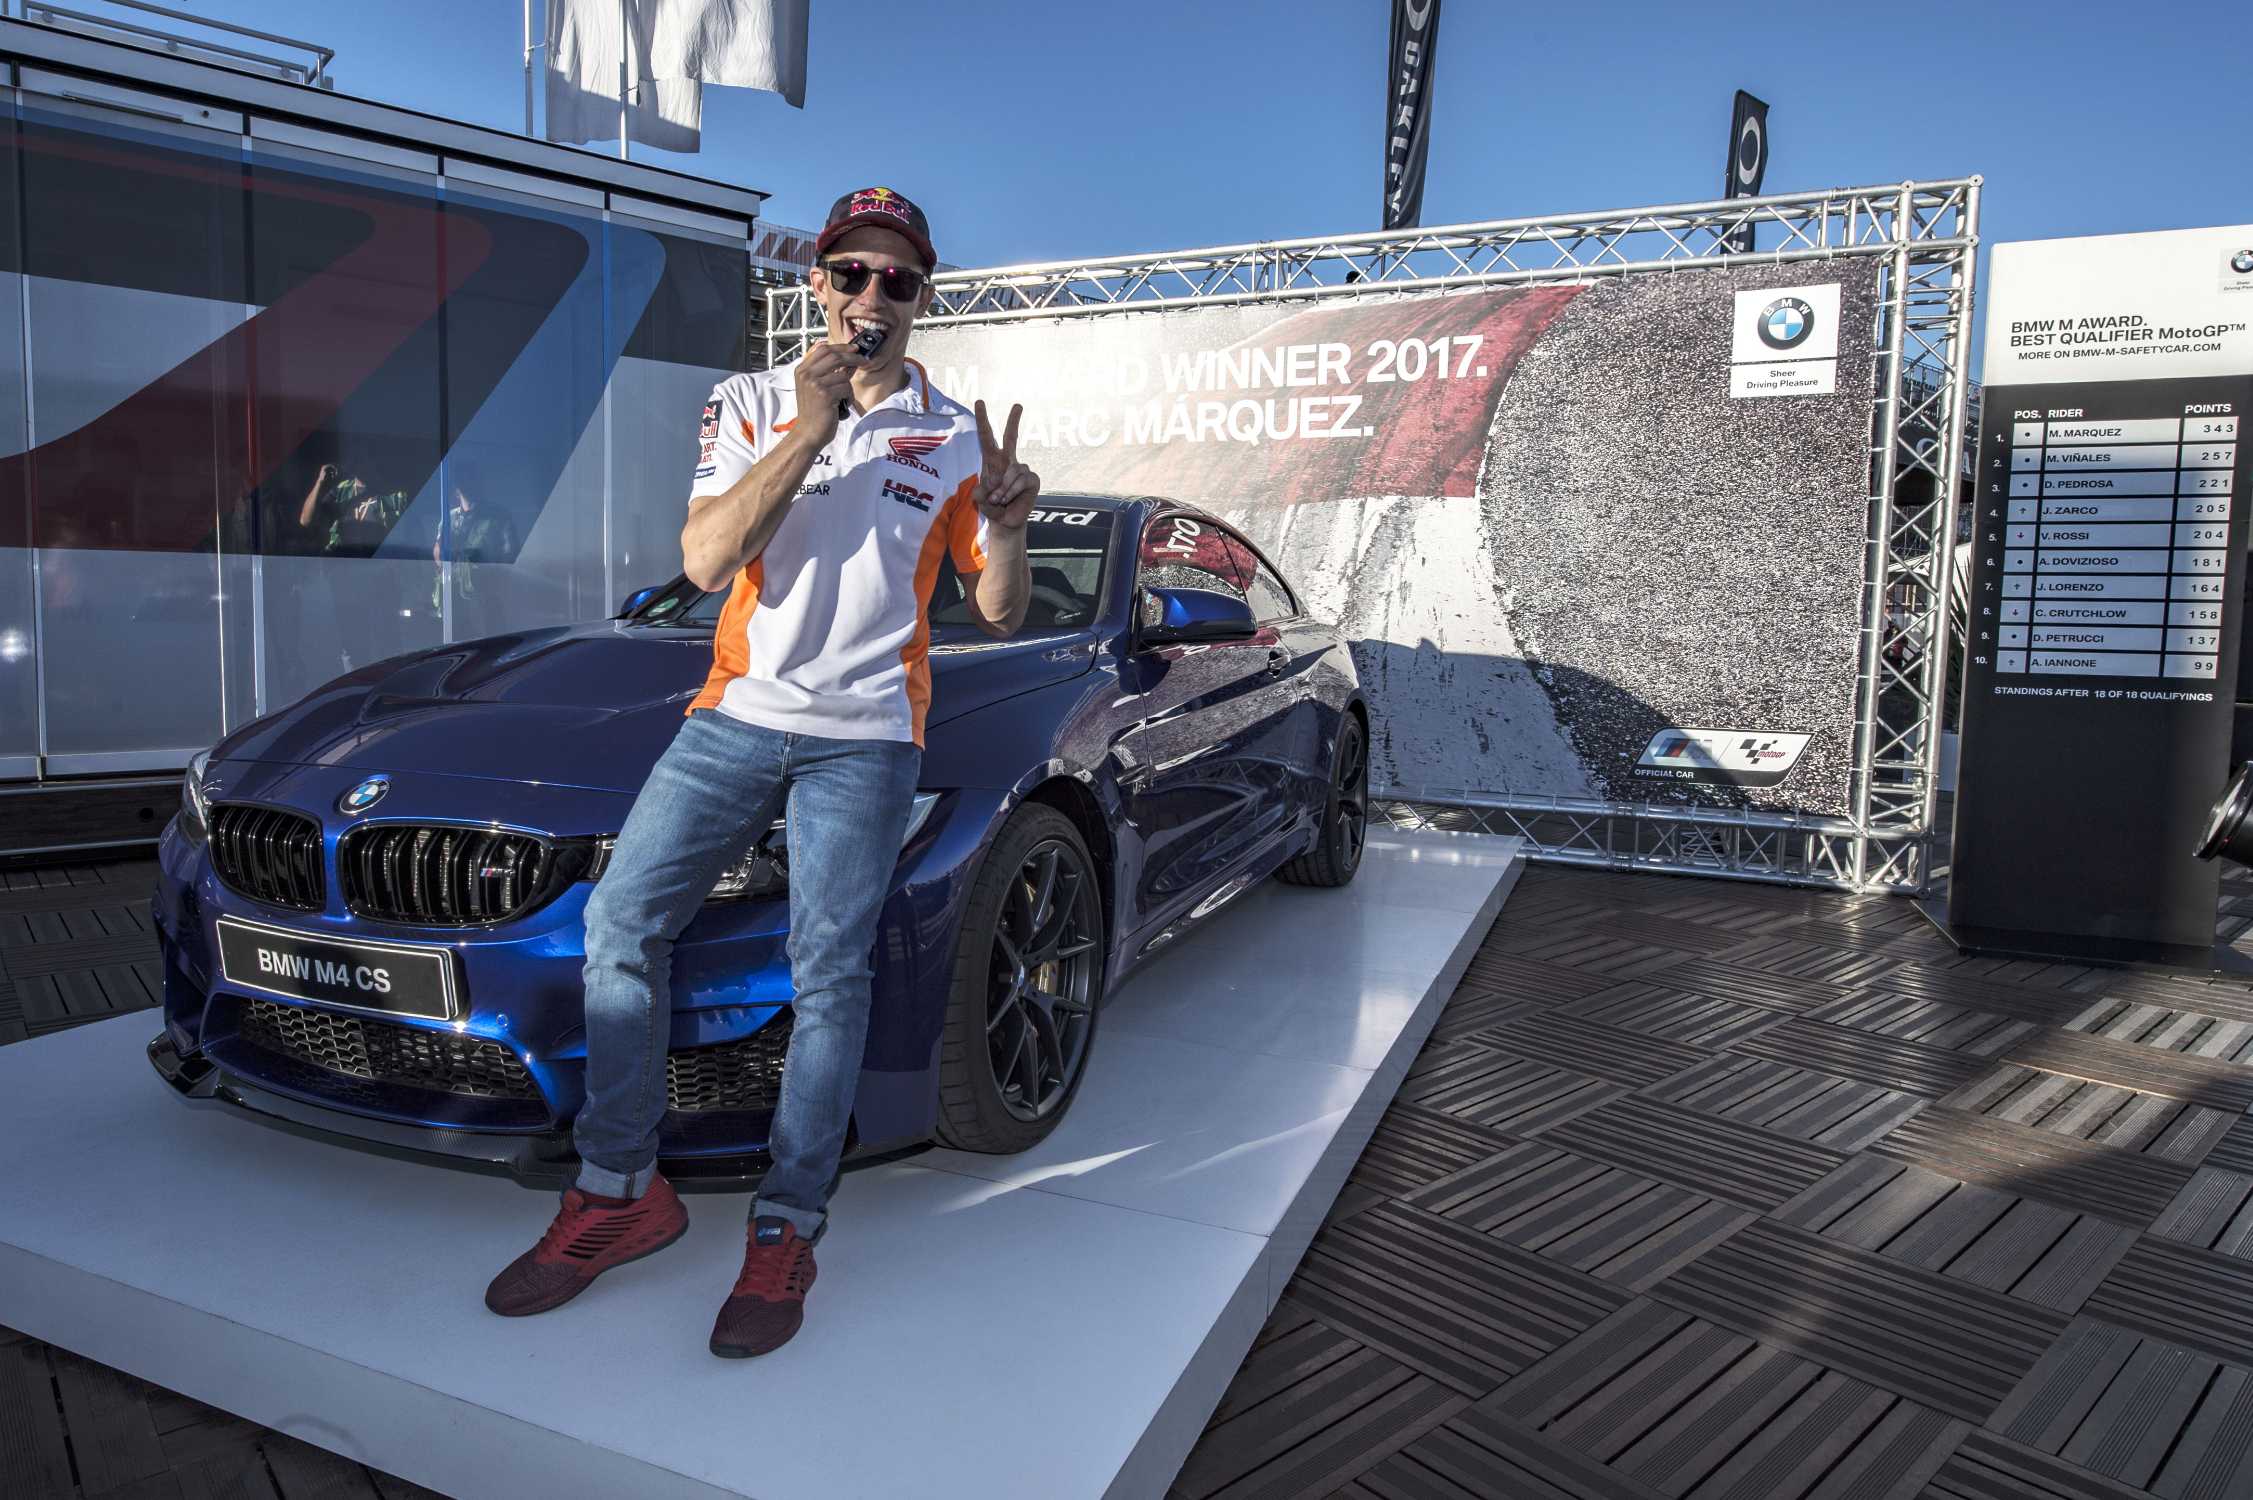 Marc Marquez y su BMW M4 CS